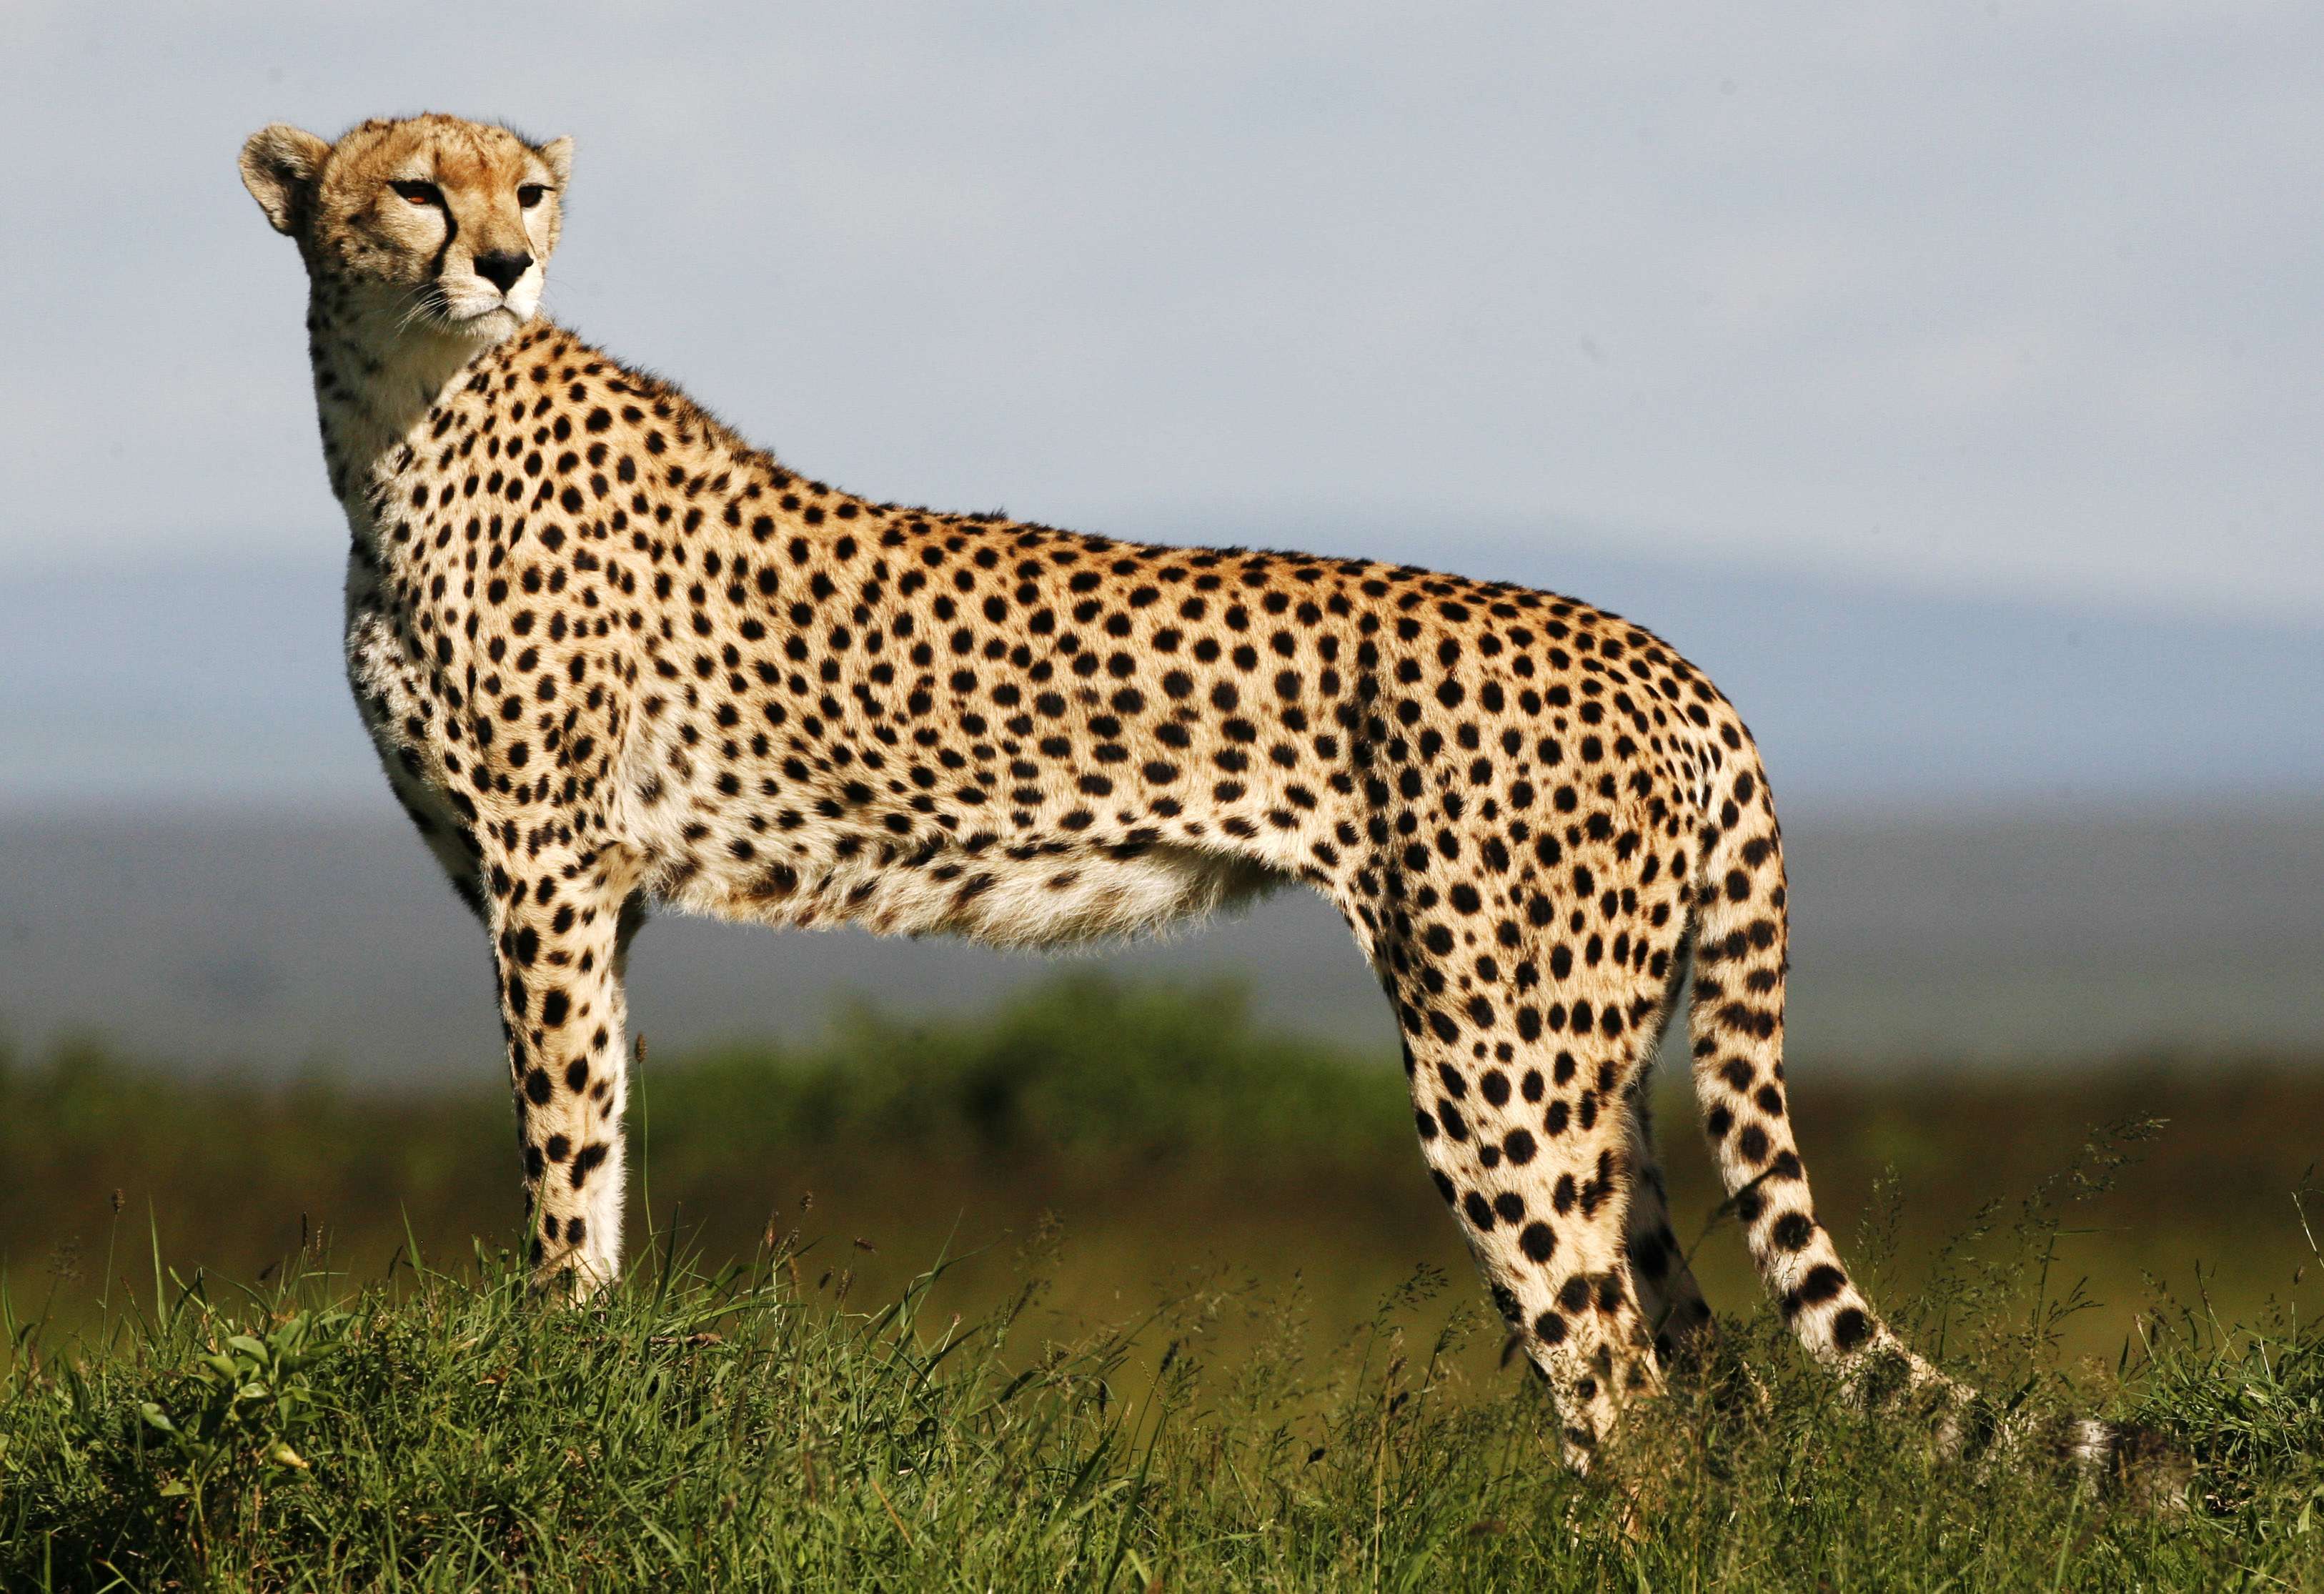 Beautiful Cheetah Background, Standing Cheetah Photo